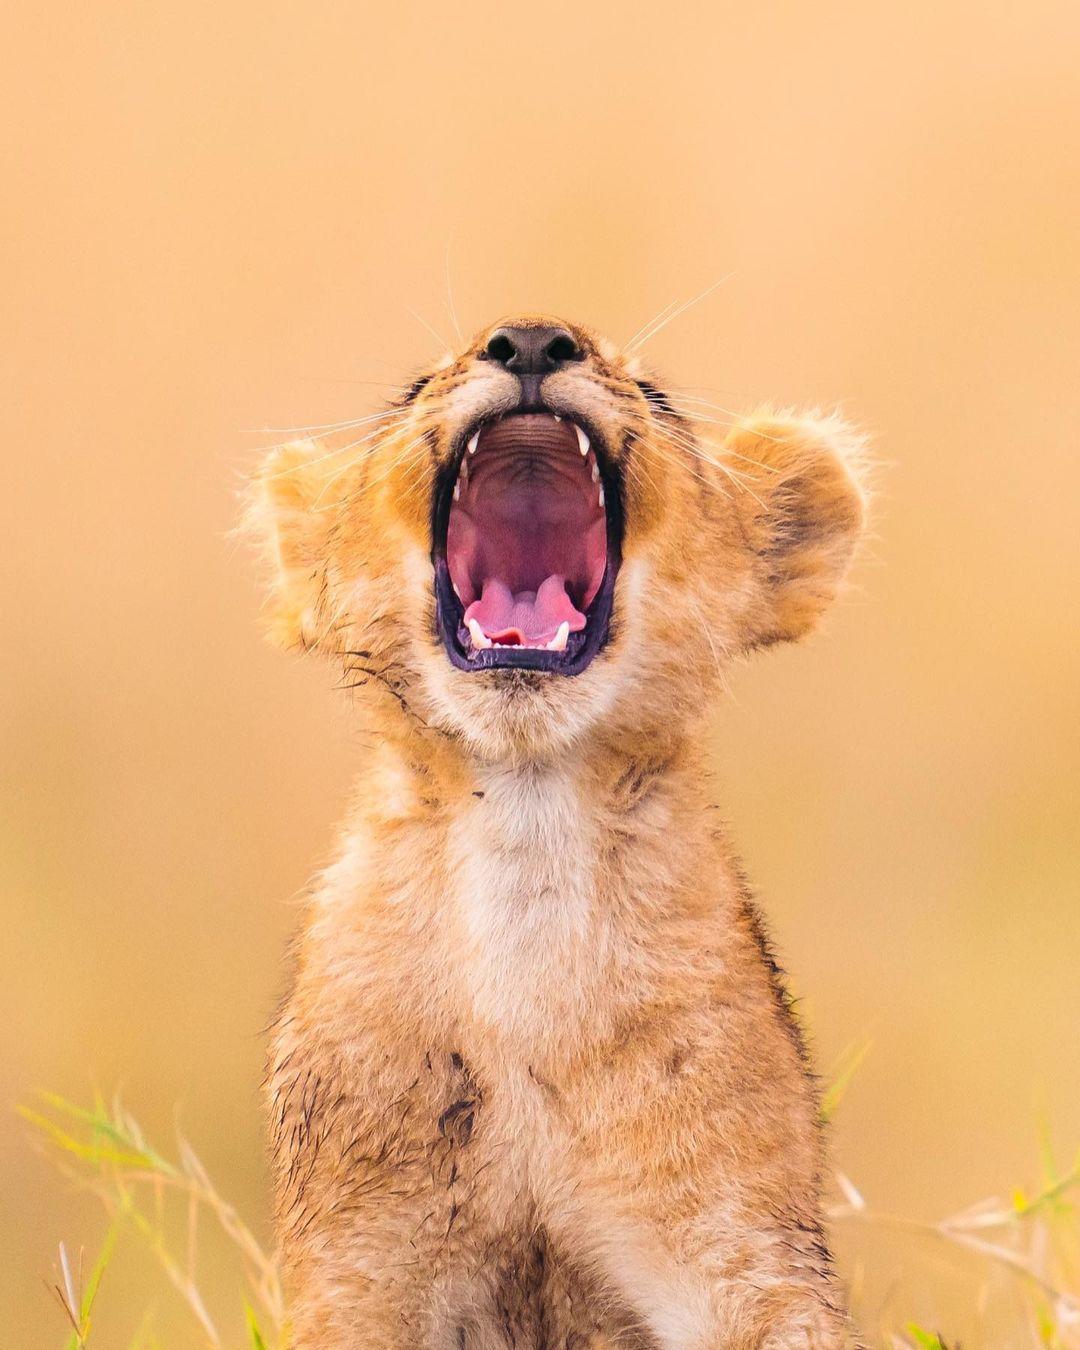  打哈欠的小狮子，来自摄影师Emmett Sparling。 